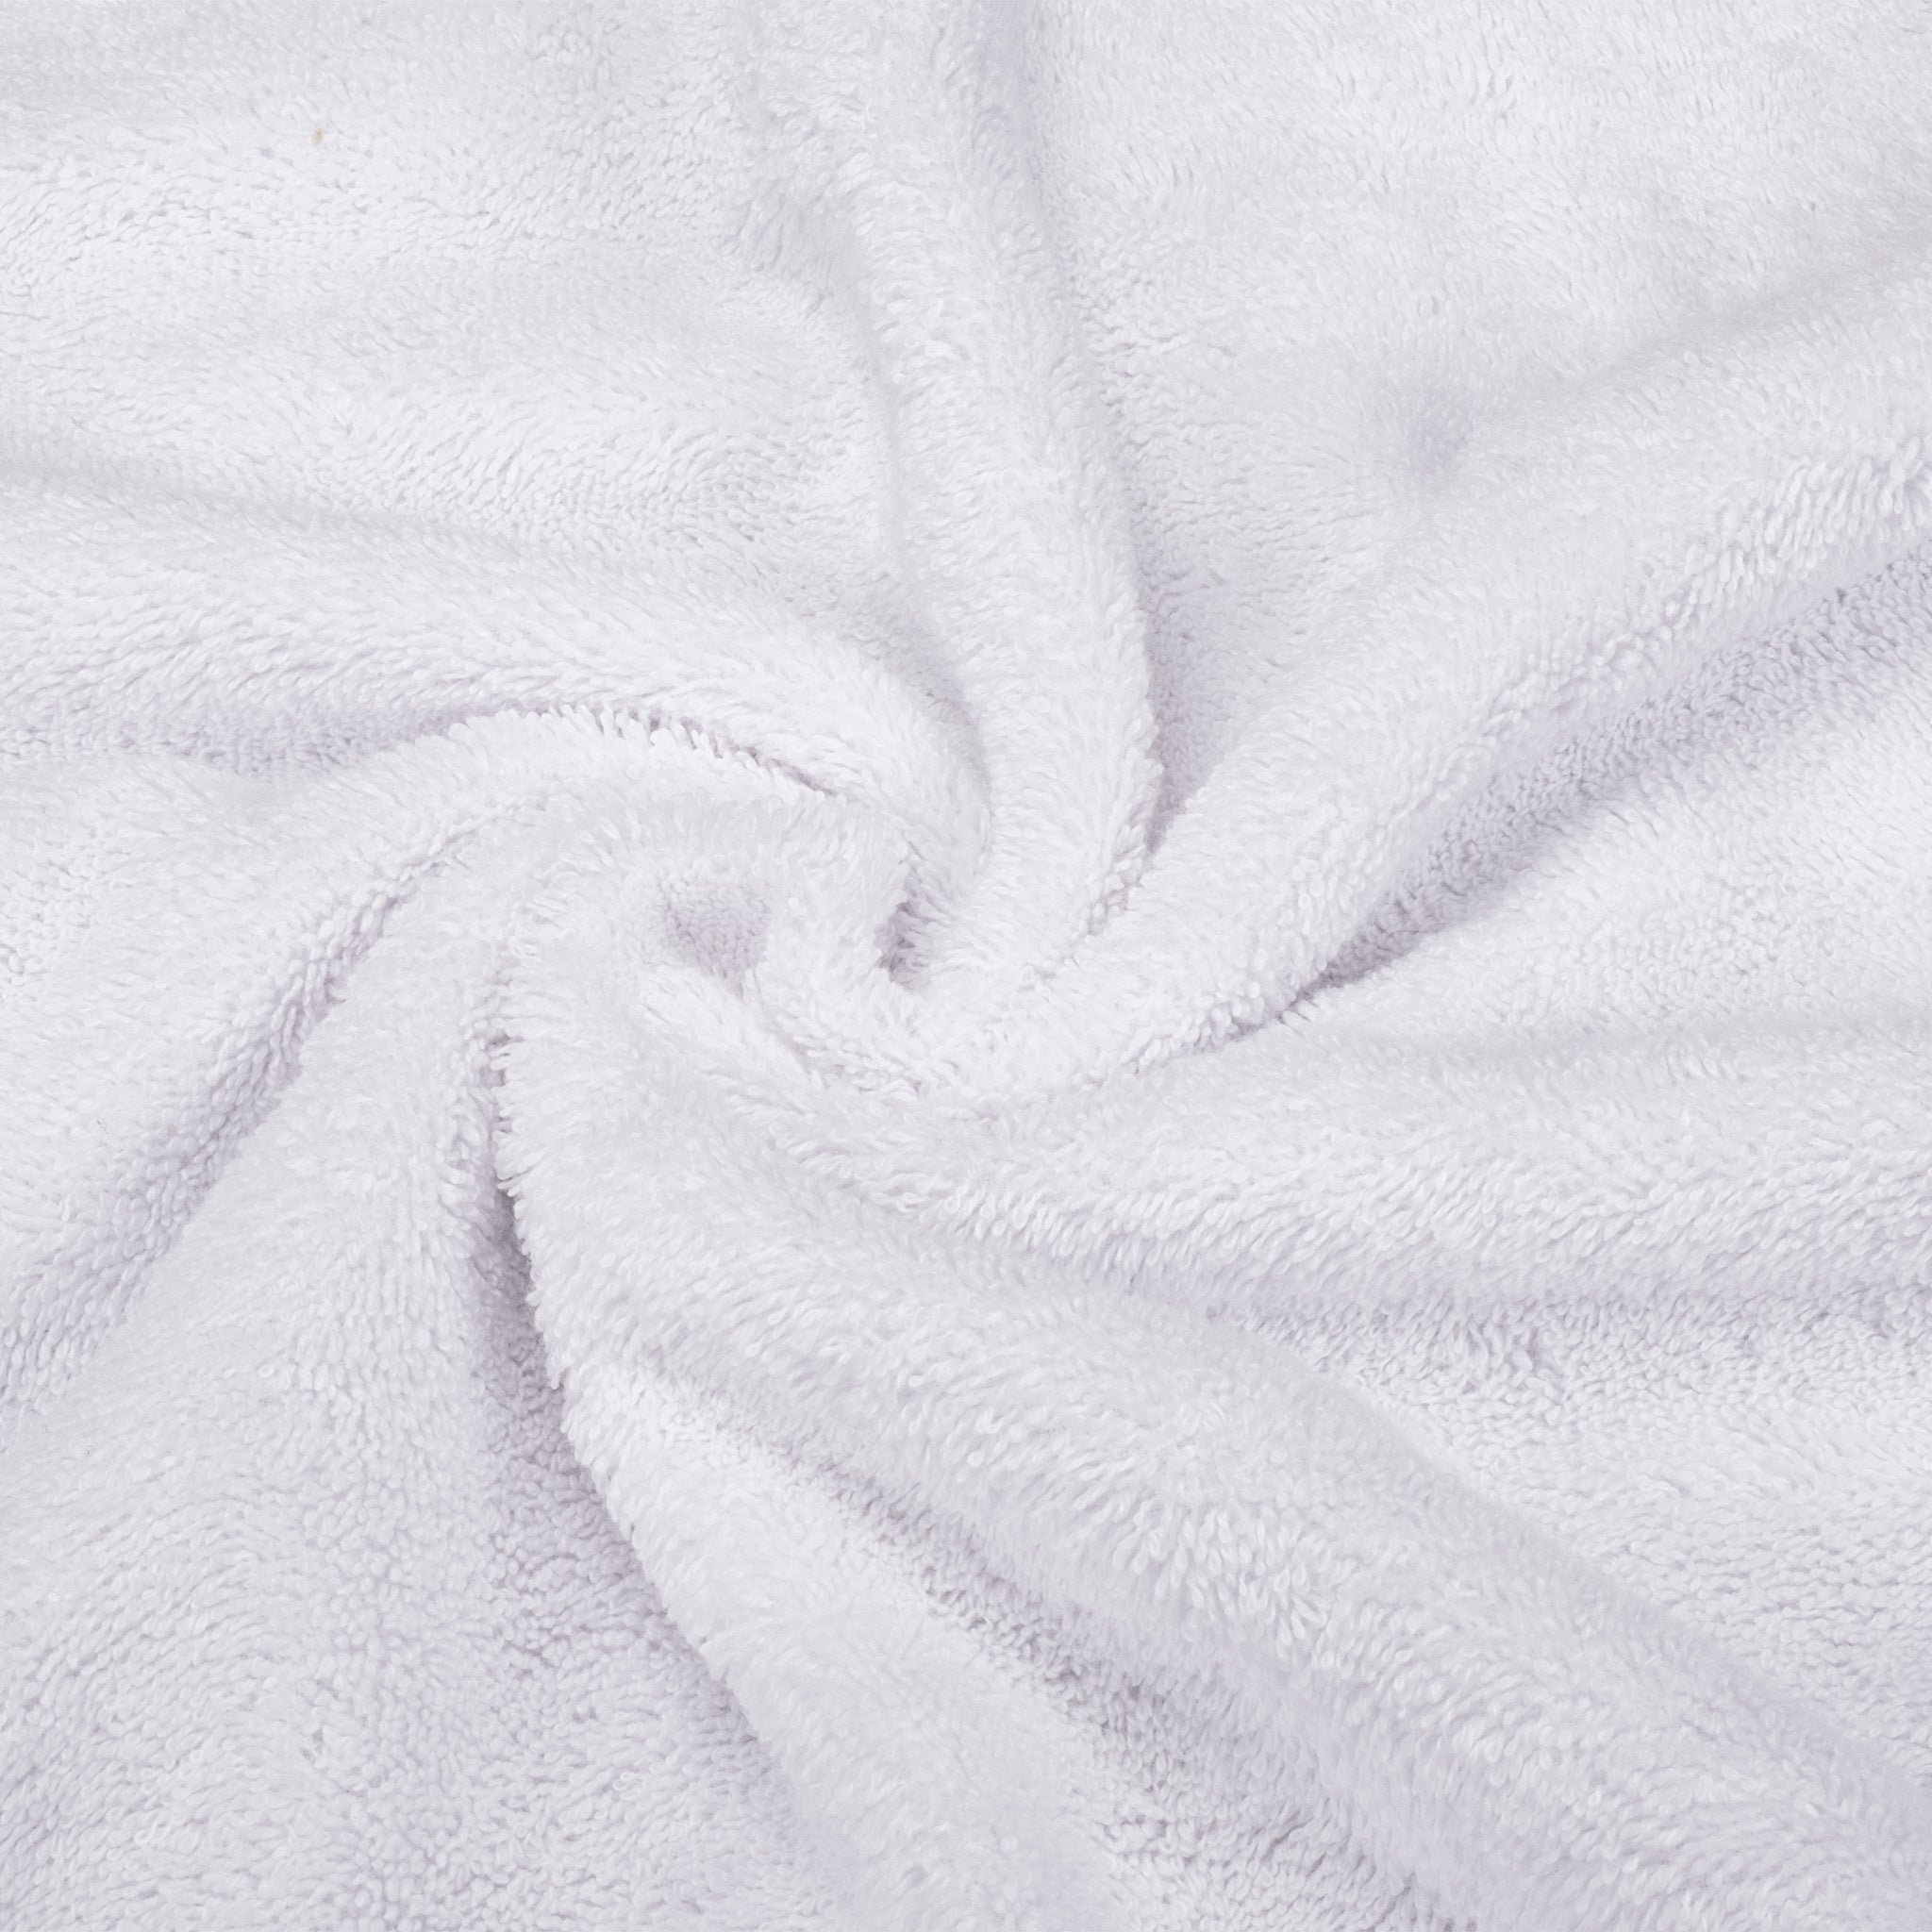 American Soft Linen 100% Turkish Cotton 6 Piece Towel Set Wholesale white-7